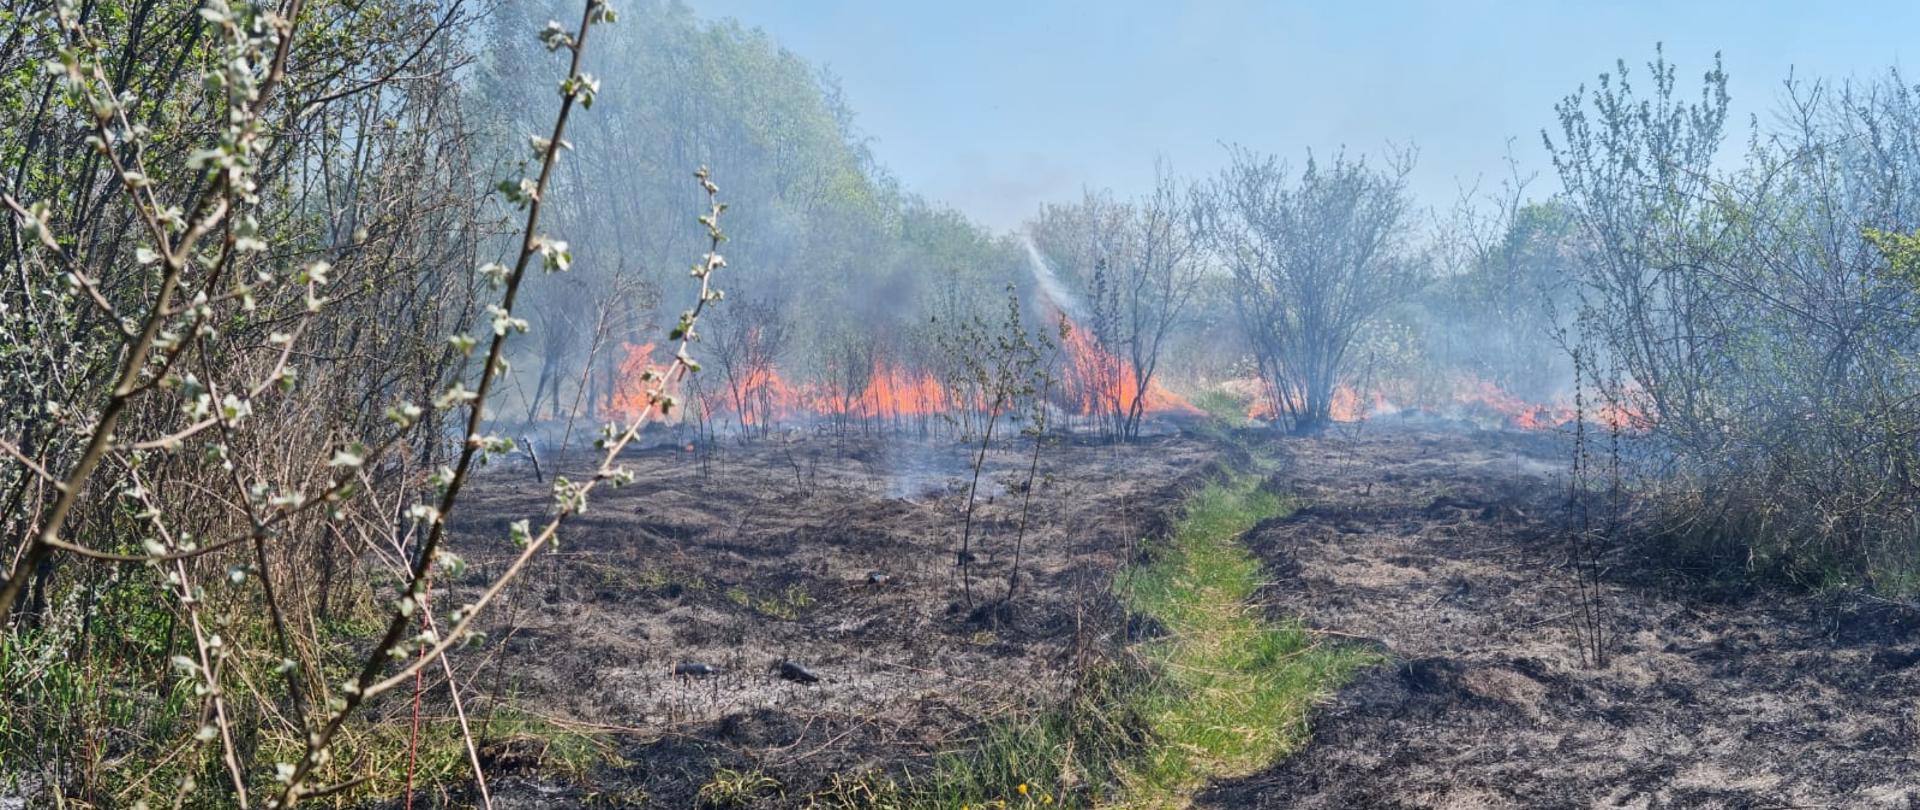 Na zdjęciu widać pożar suchej trawy na nieużytkach. Teren na którym wcześniej paliła się trawa jest koloru szarego w tle za ogniem widać zielone drzewa